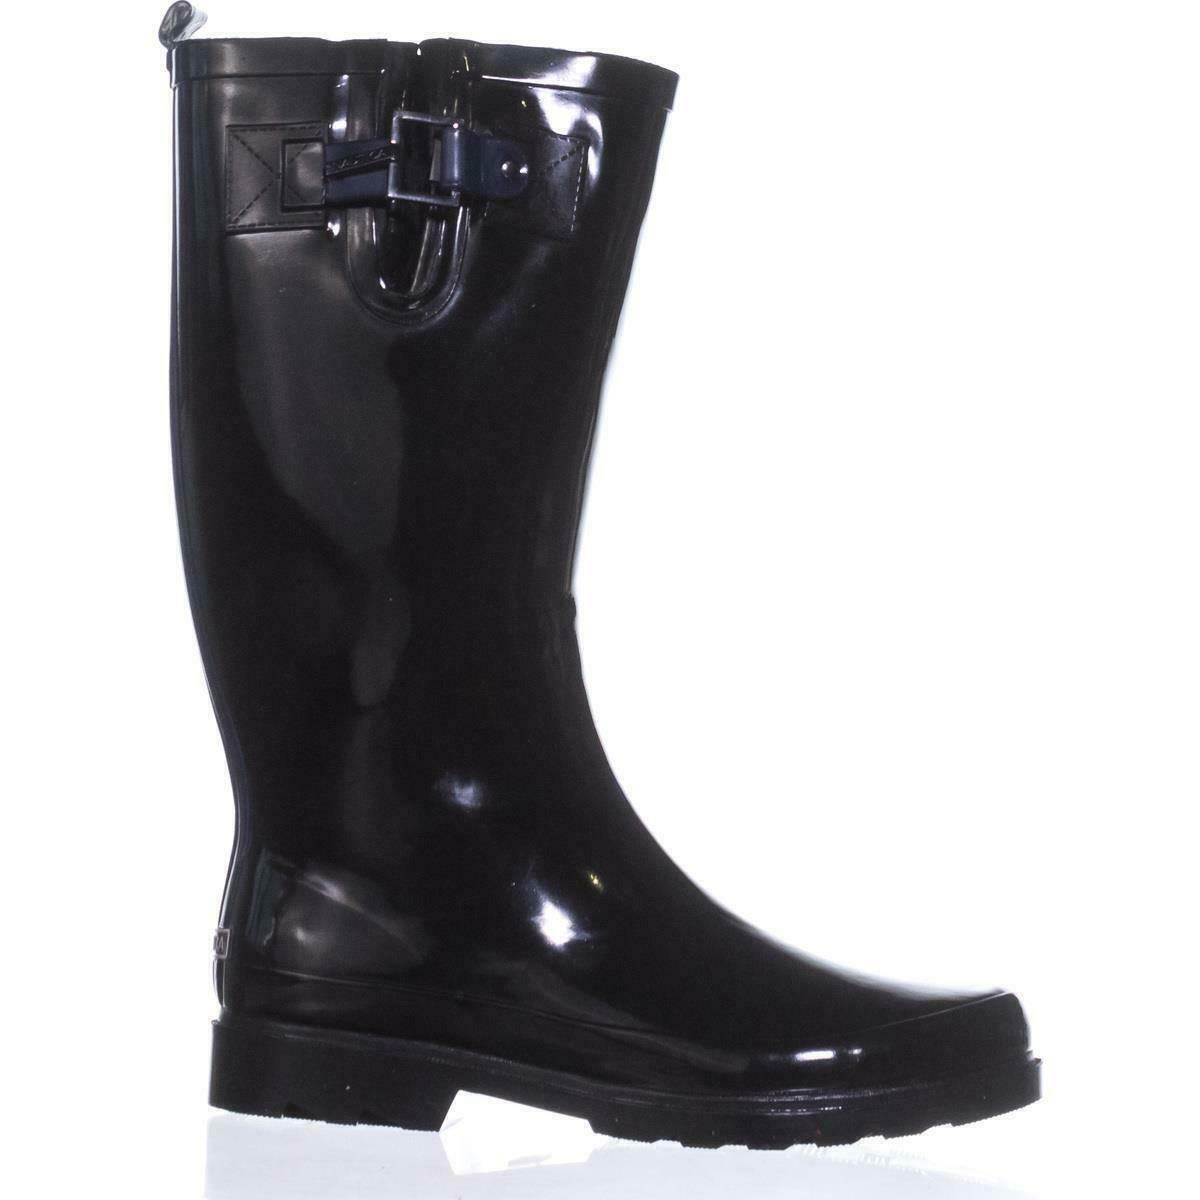 Nautica Finsburt Knee High Rain Boots, Black, 6 US / 36 EU - Boots